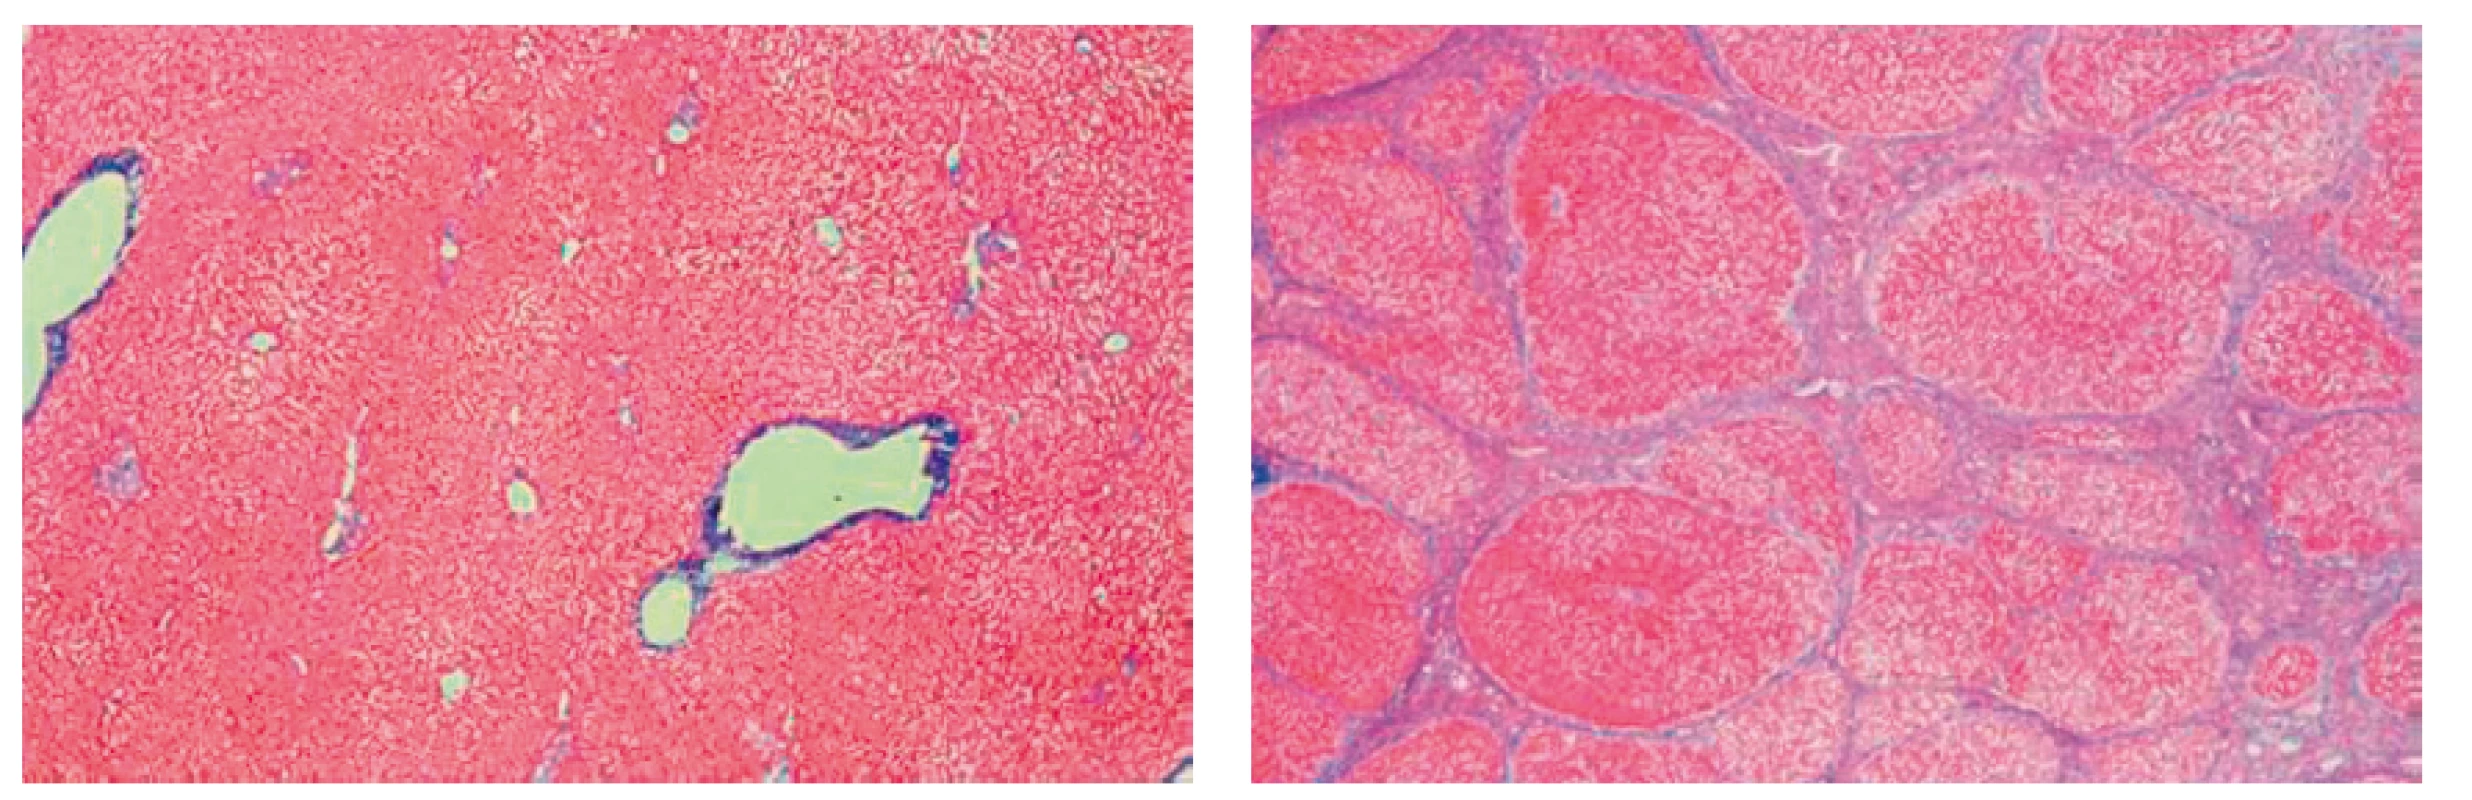 Mikroskopický obraz jater (vlevo normální játra, vpravo cirhotická játra)